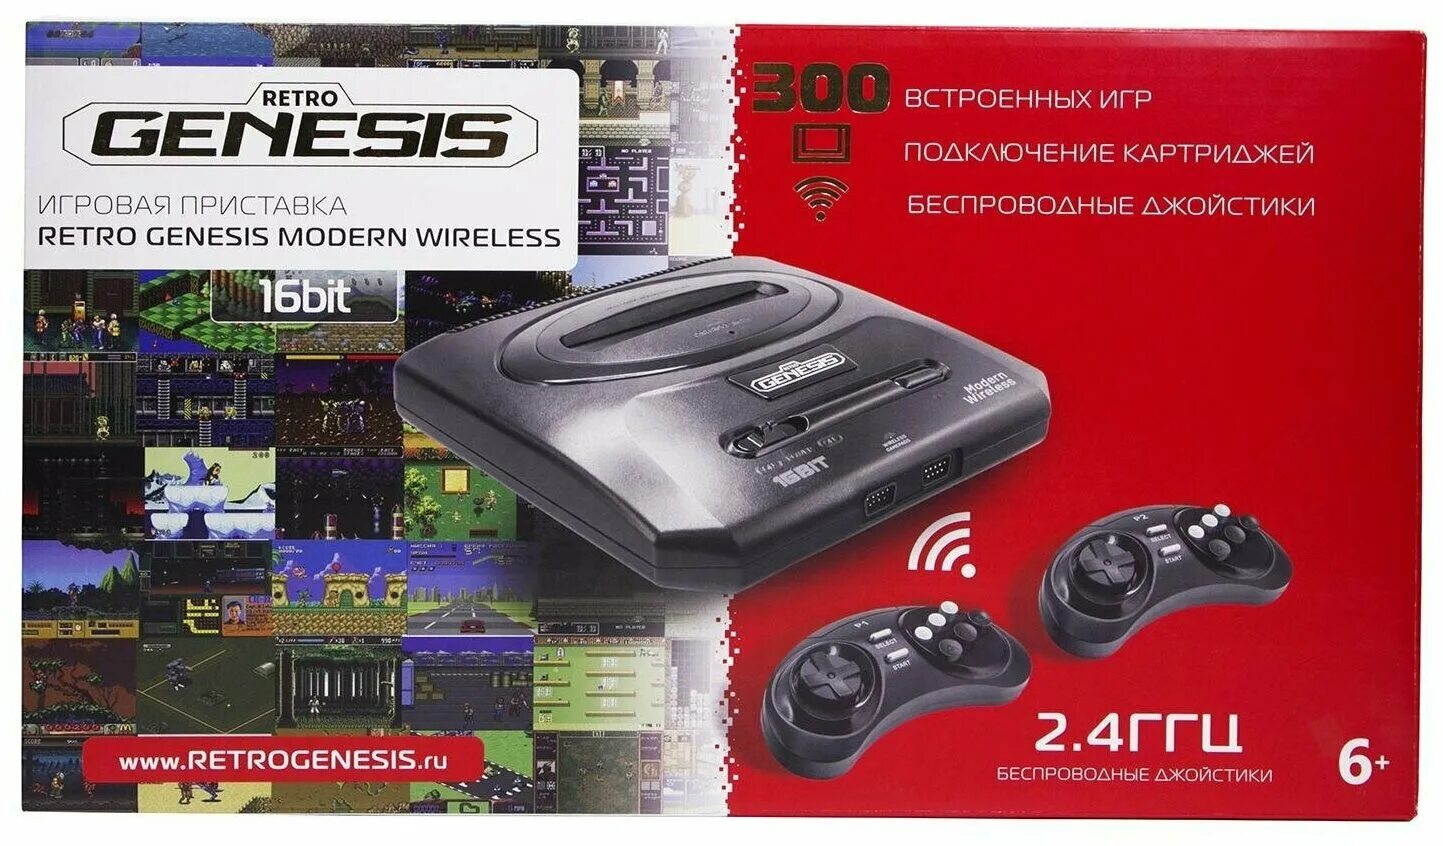 Приставка 300 игр. Игровая консоль Retro Genesis 300 игр. Игровая консоль Sega Retro Genesis Modern 300 игры. Sega Retro Genesis Modern Wireless + 225 игр. Приставка Retro Genesis модель ZD 02.